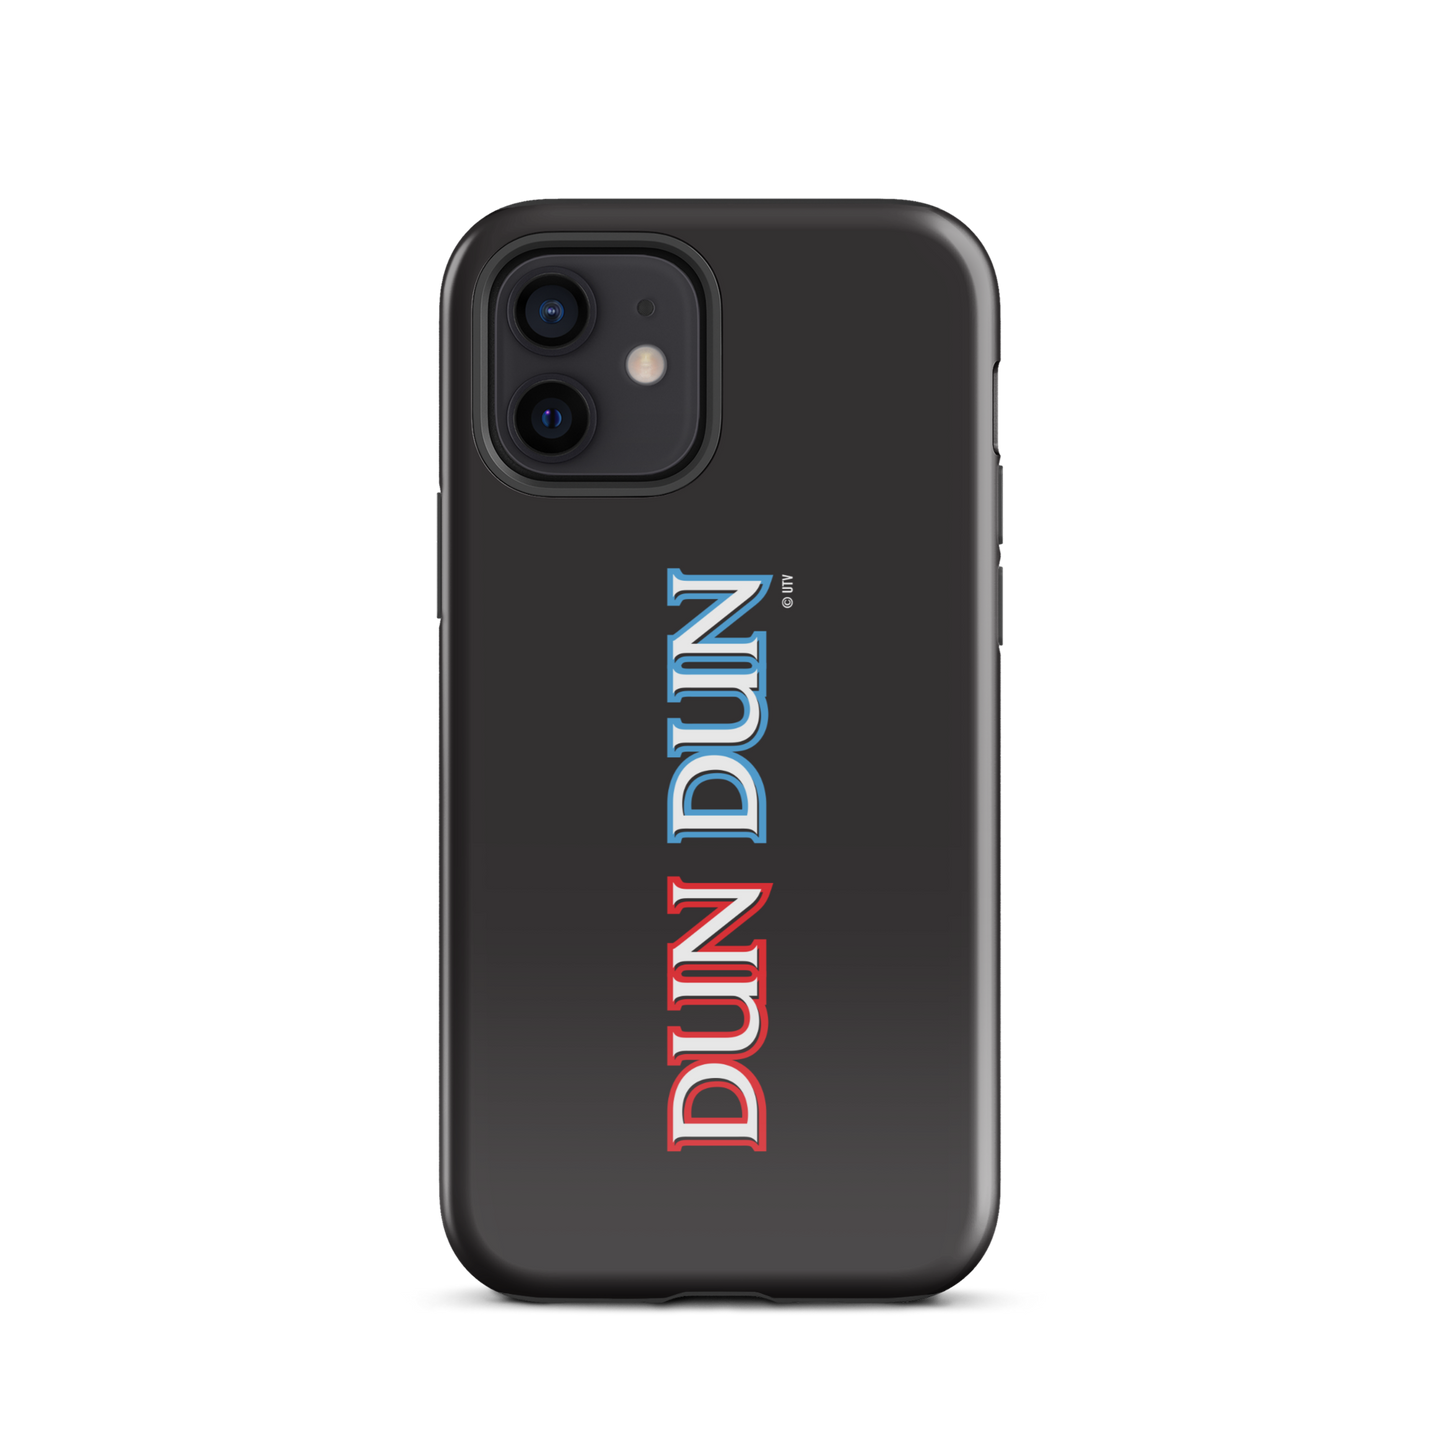 Law & Order: SVU Dun Dun Tough Phone Case - iPhone